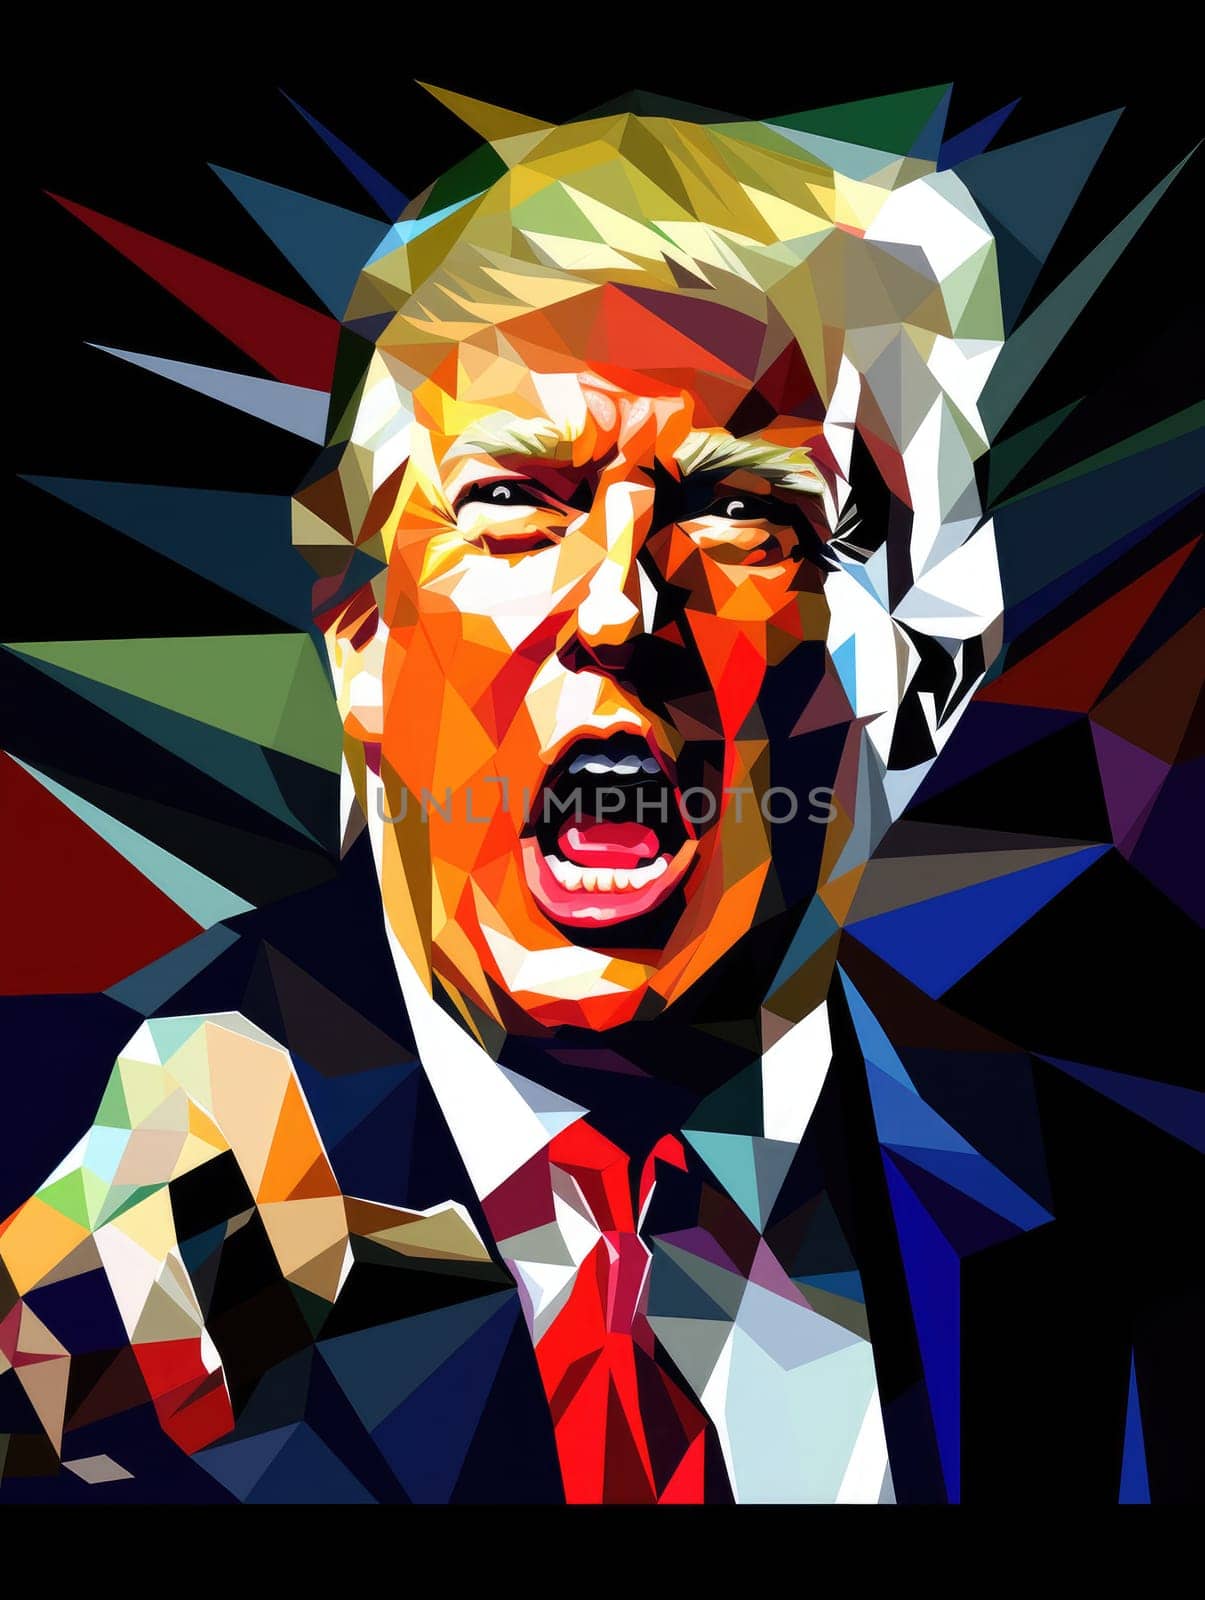 Donald Trump portrait by palinchak